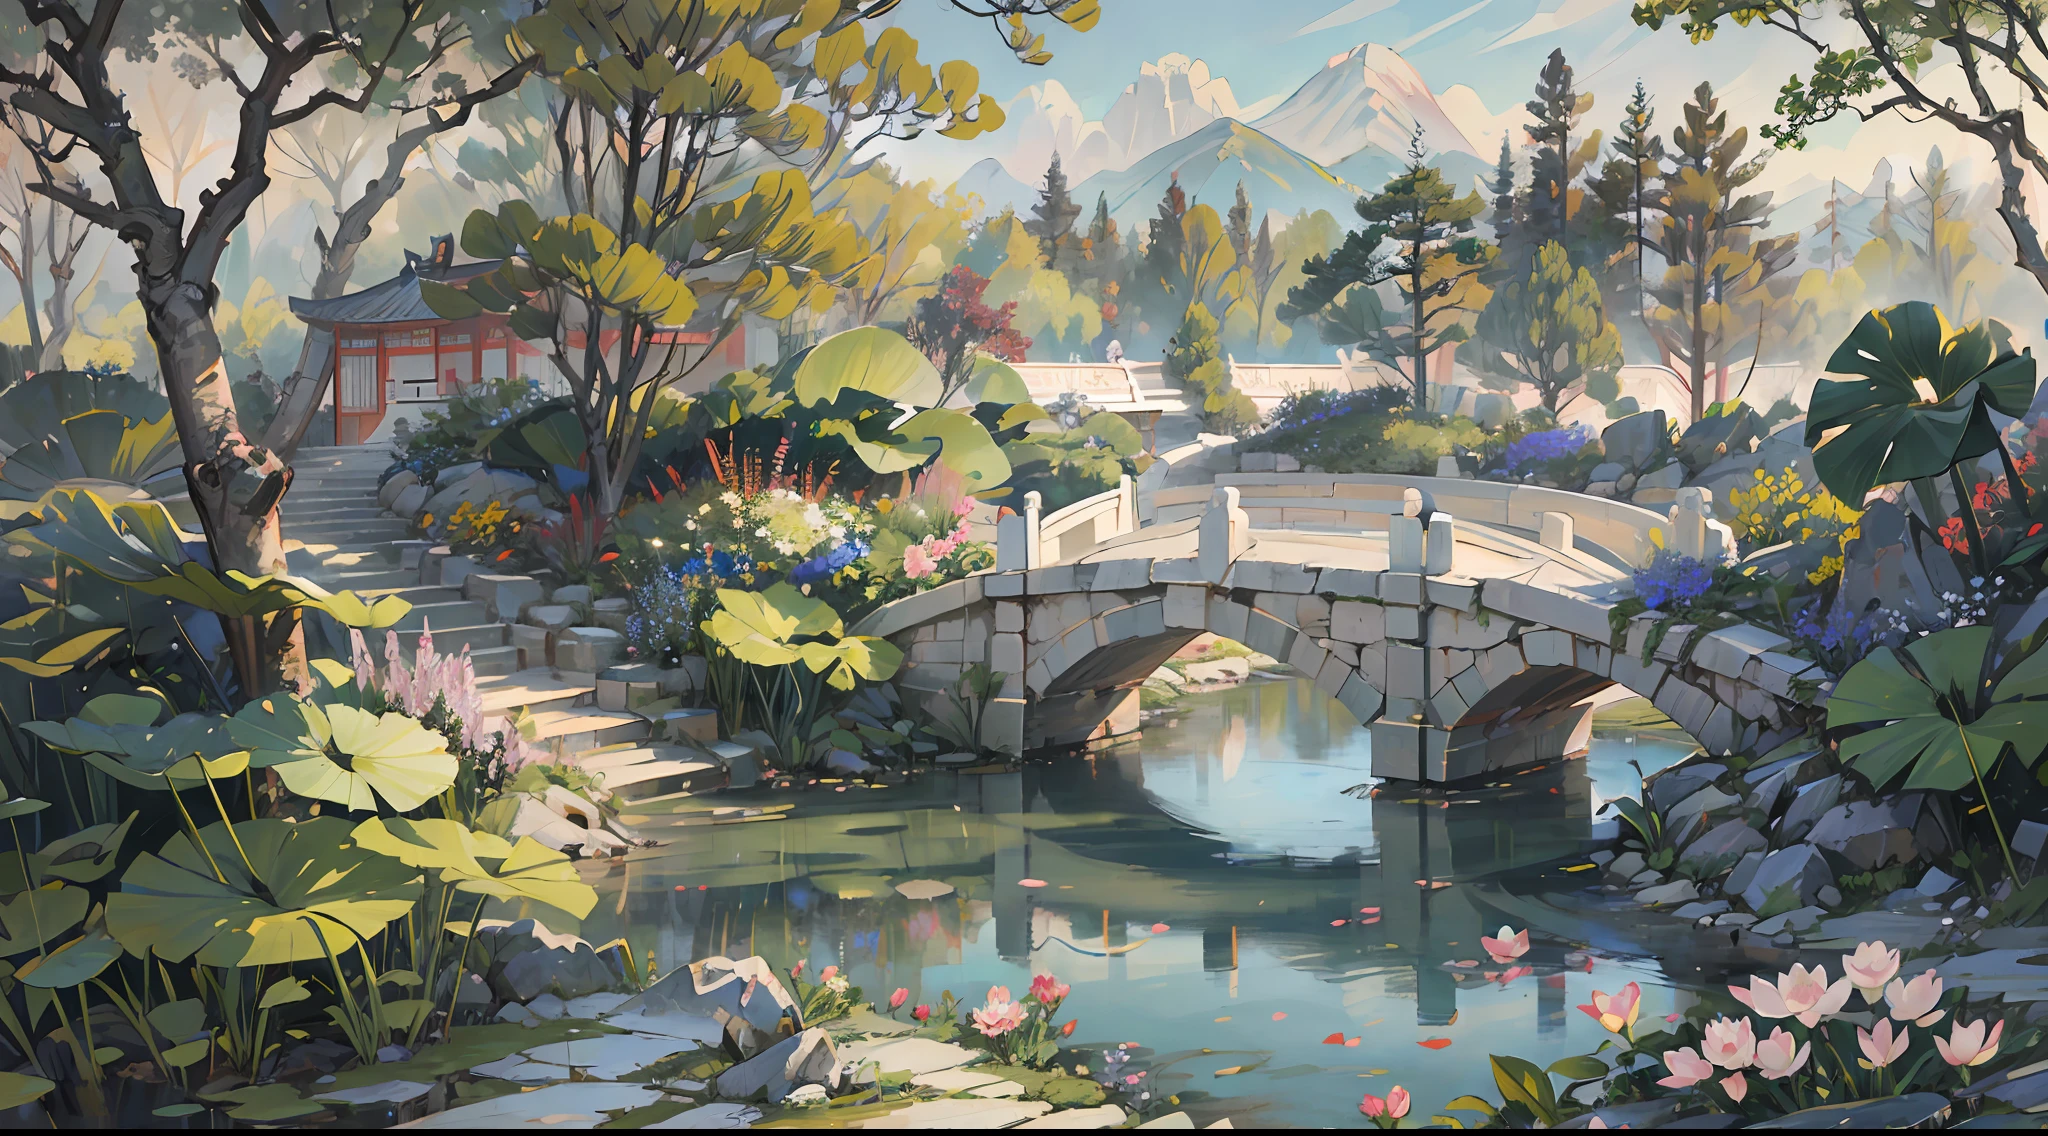 ((最高品質, 傑作: 1.2)), CG, 8K, 複雑な詳細, 映画の視点, (誰もいない), (古代中国の庭園), pond filled with lotus フラワーズ, 岩, フラワーズ, 竹林, 滝, 森林地帯, せせらぎに架かる小さな橋, detailed foliage and フラワーズ, (日光が輝く, きらめく波), 平和で穏やかな雰囲気, ((柔らかく上品な色彩)), ((精巧に作られた構成))